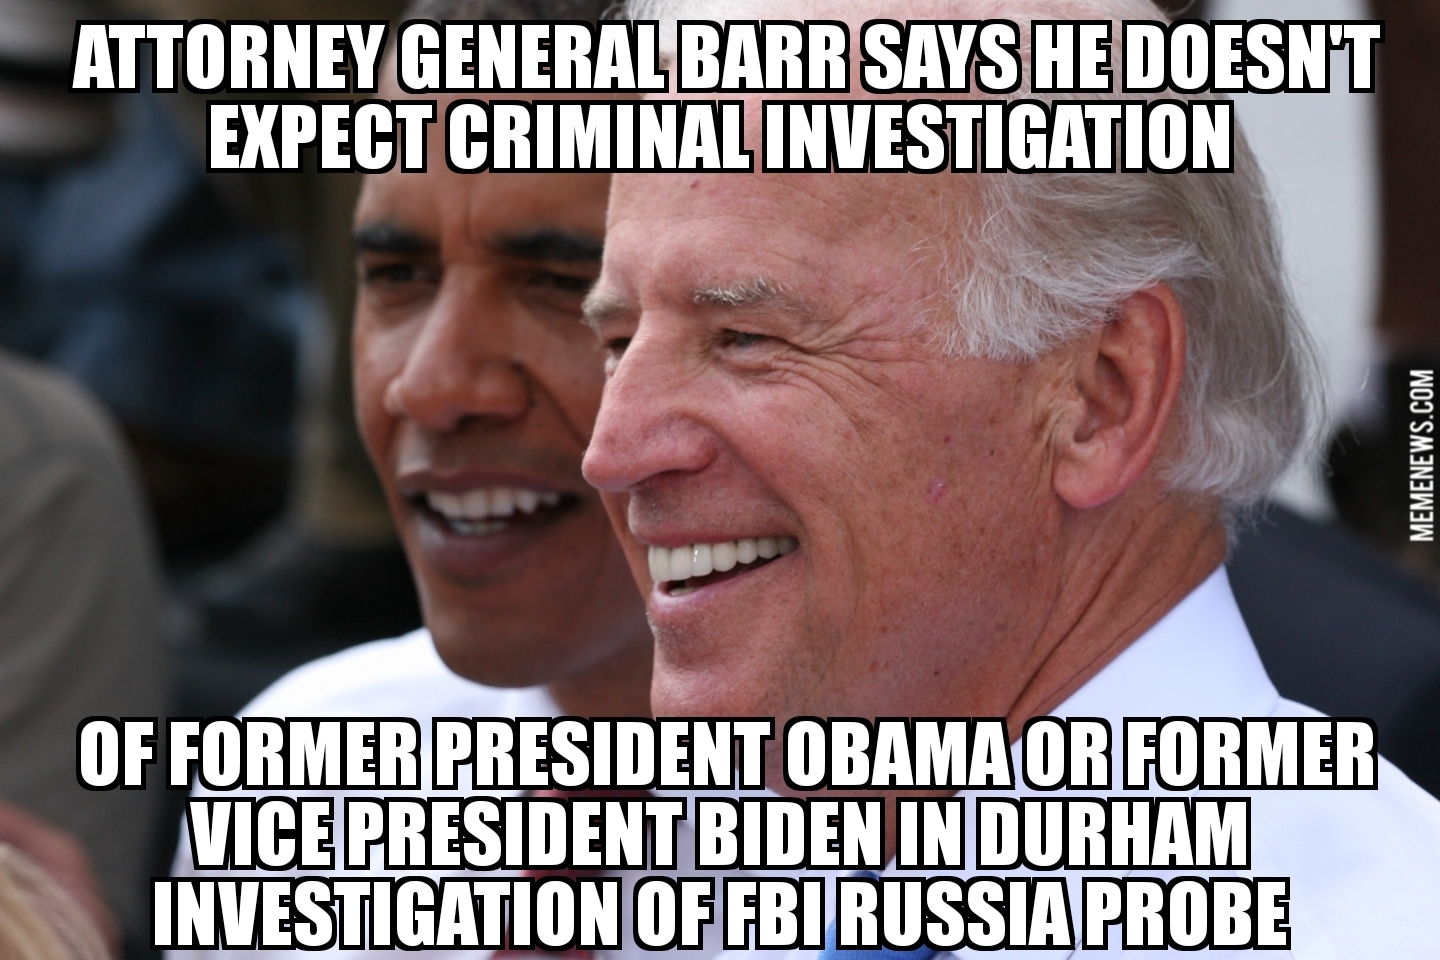 Barr doesn’t expect criminal investigation of Obama, Biden